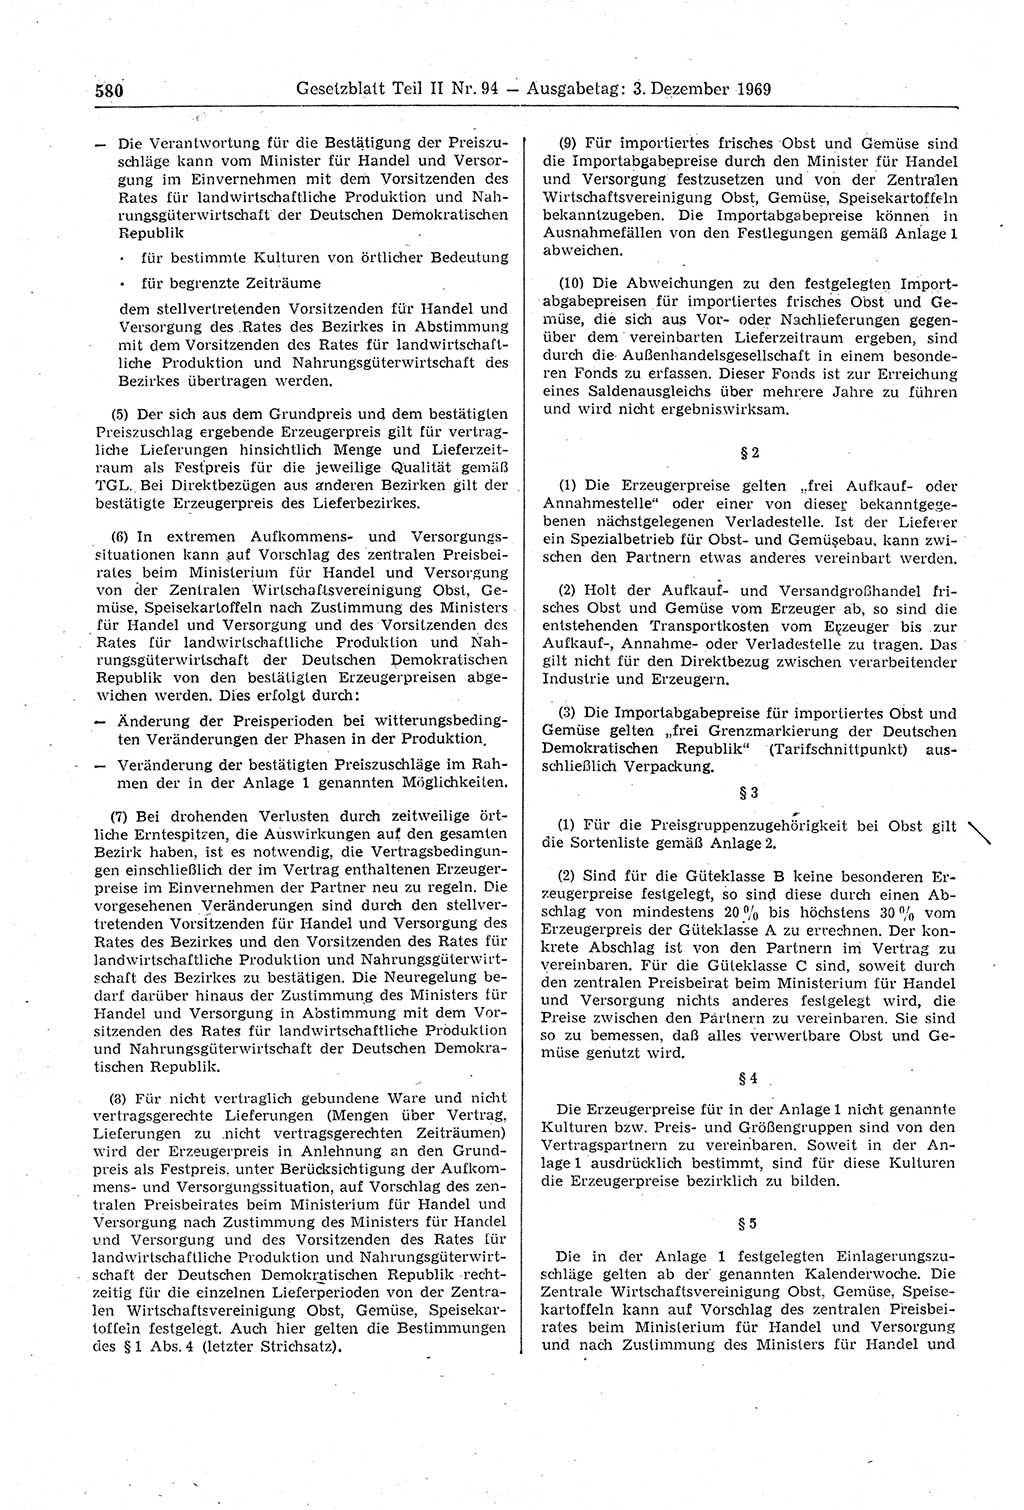 Gesetzblatt (GBl.) der Deutschen Demokratischen Republik (DDR) Teil ⅠⅠ 1969, Seite 580 (GBl. DDR ⅠⅠ 1969, S. 580)